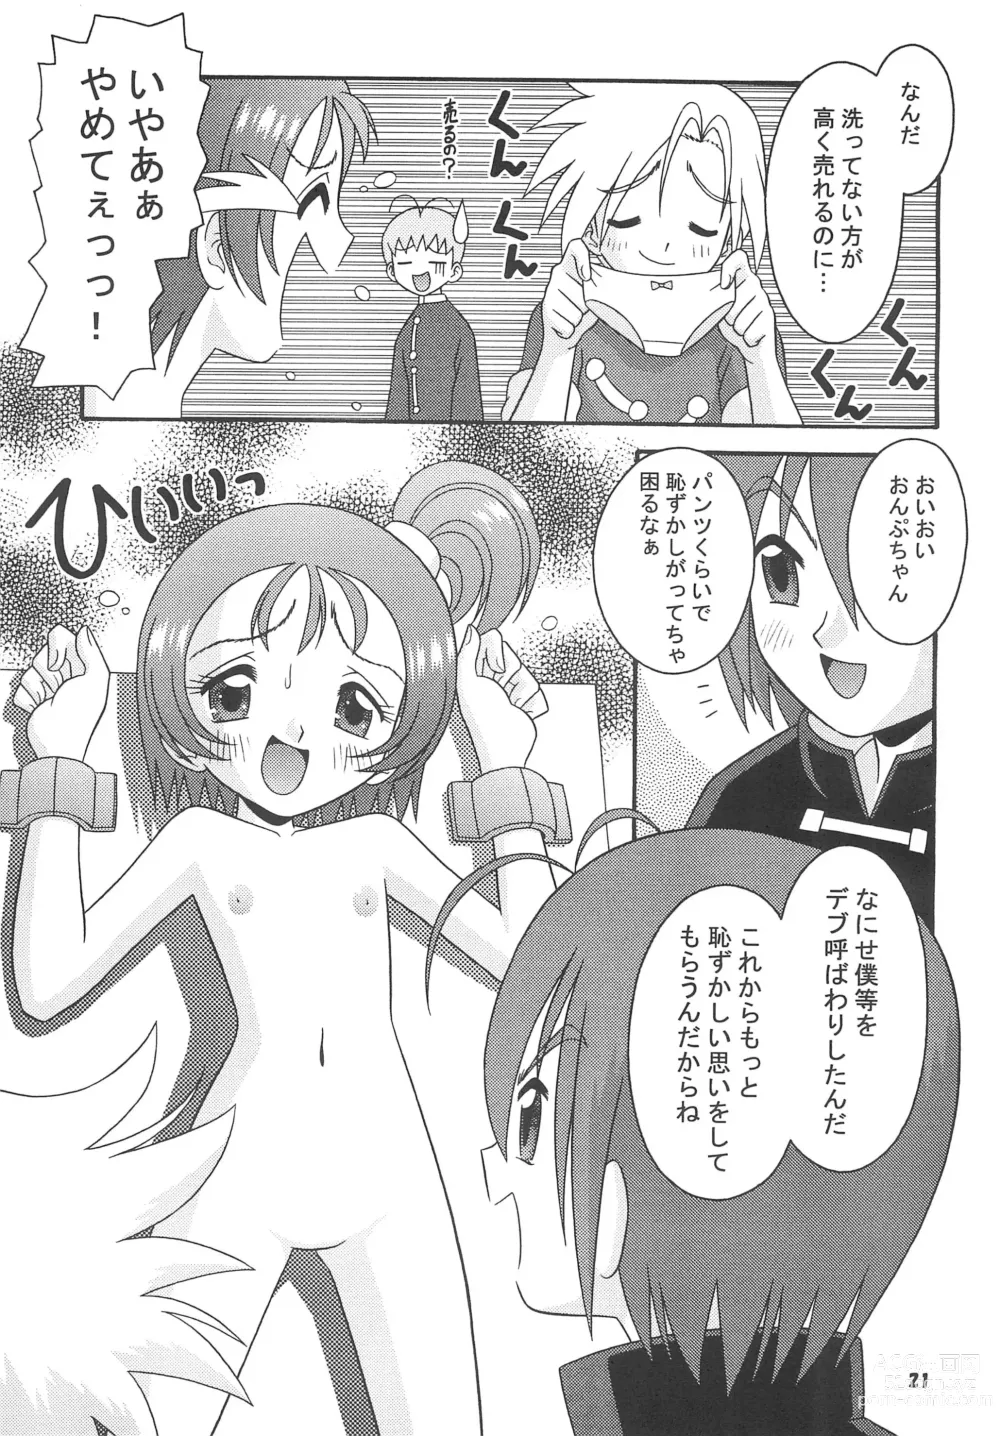 Page 23 of doujinshi Subete no Mirai ni Hikari are 4